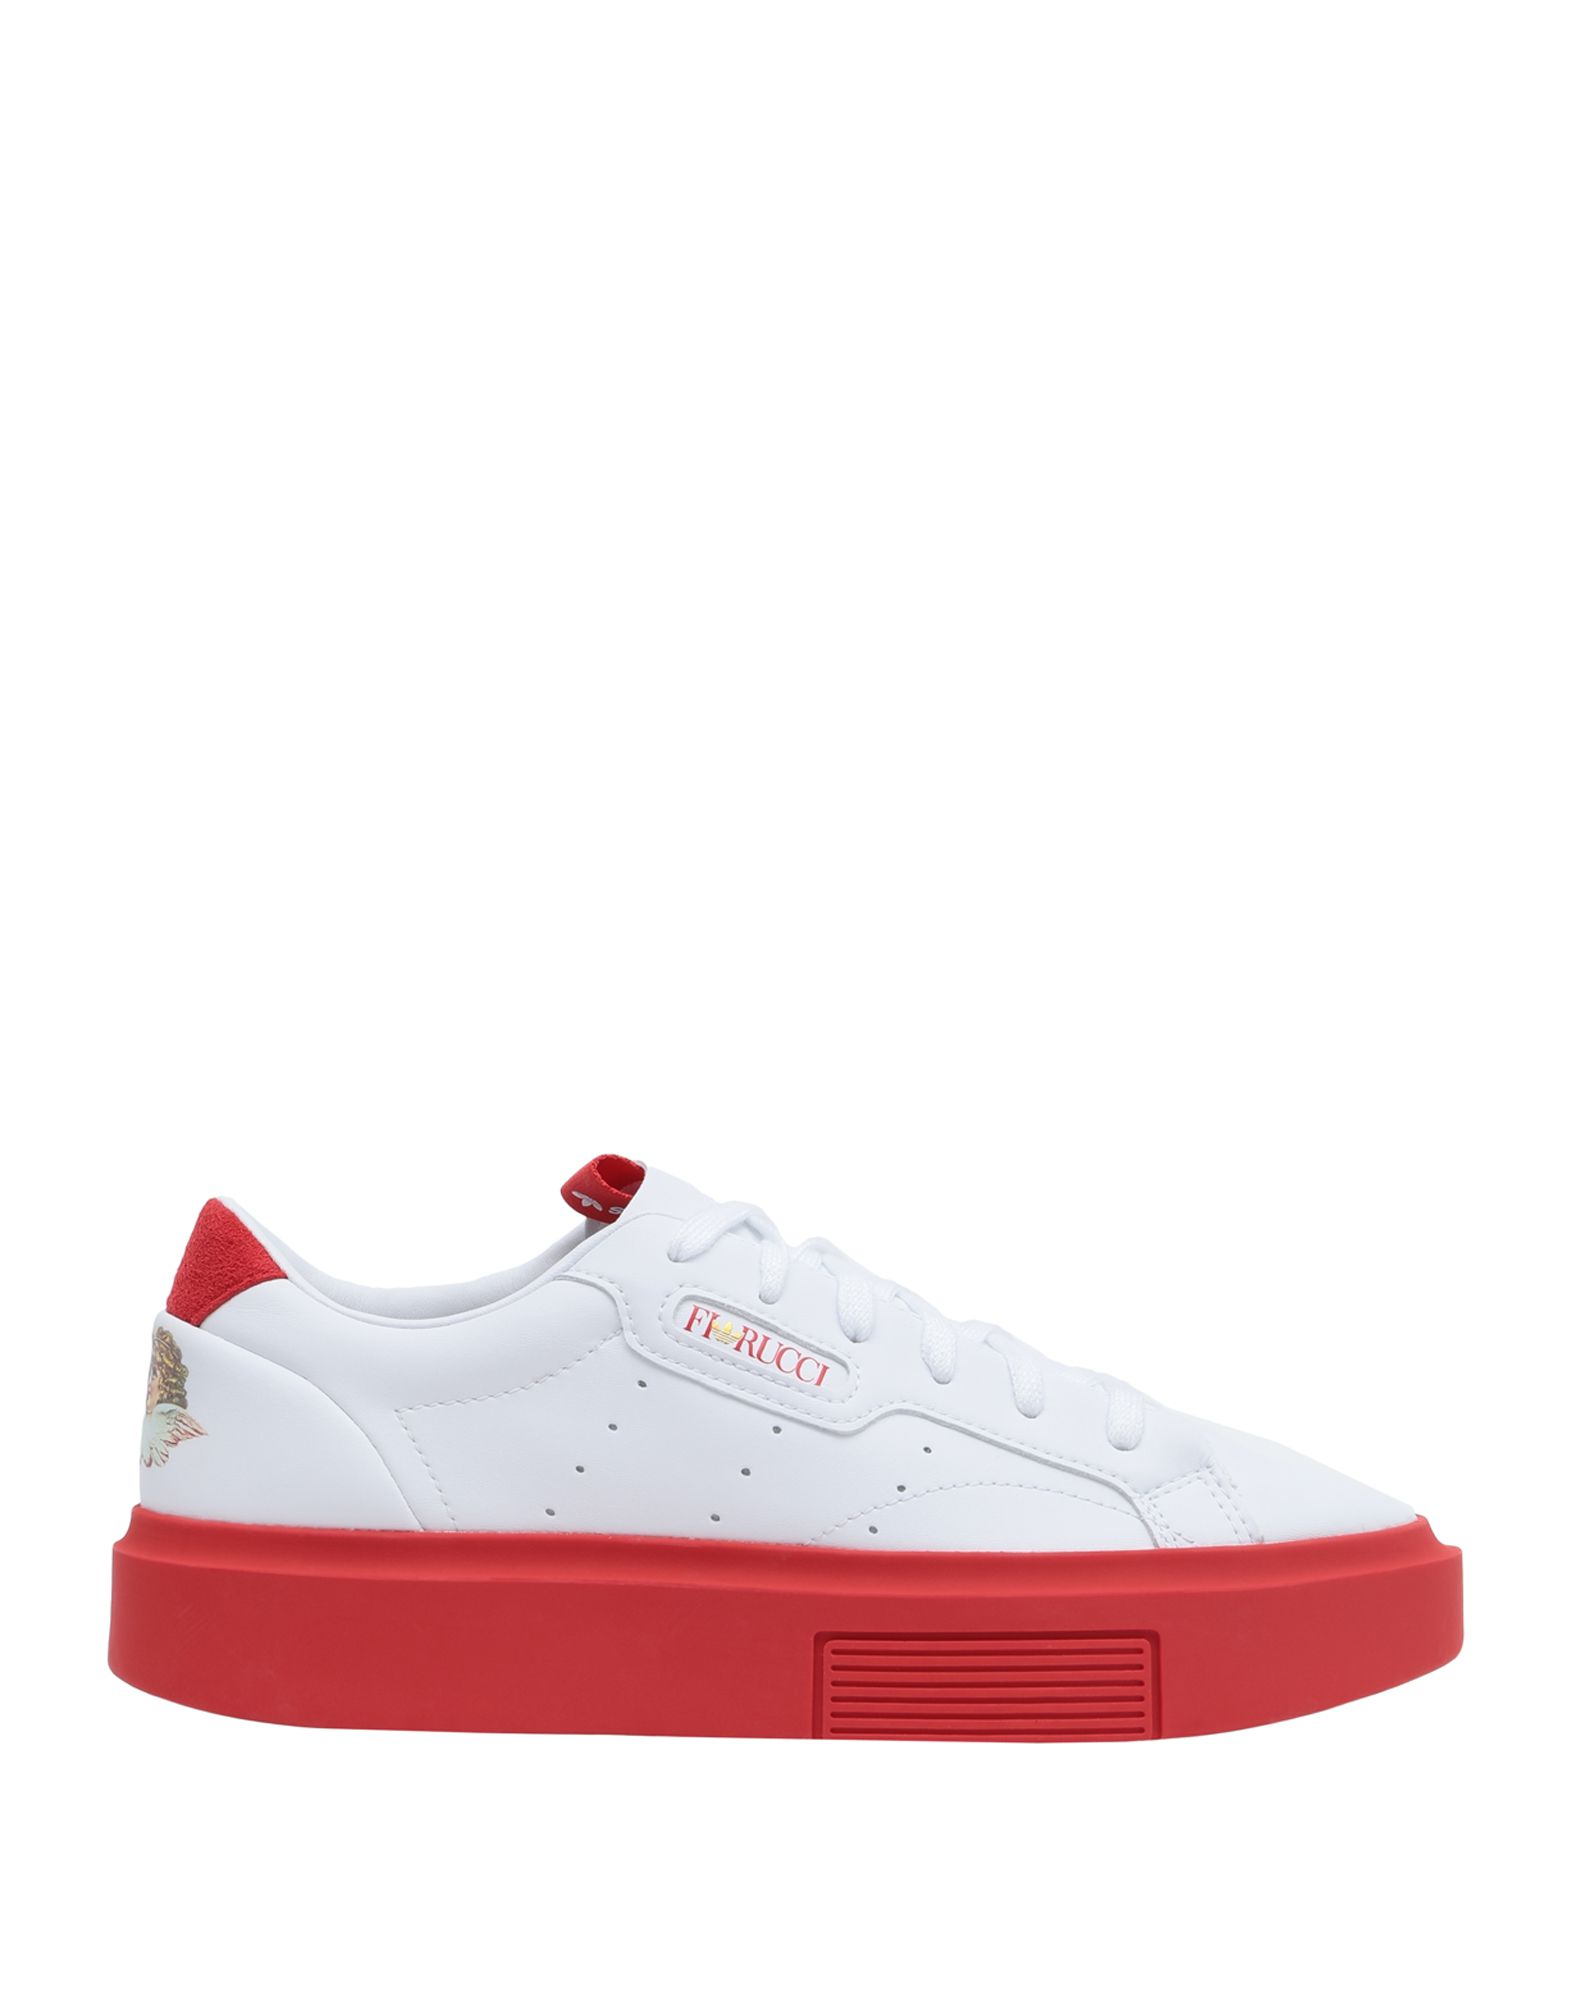 Adidas Originals X Fiorucci Sneakers In White | ModeSens